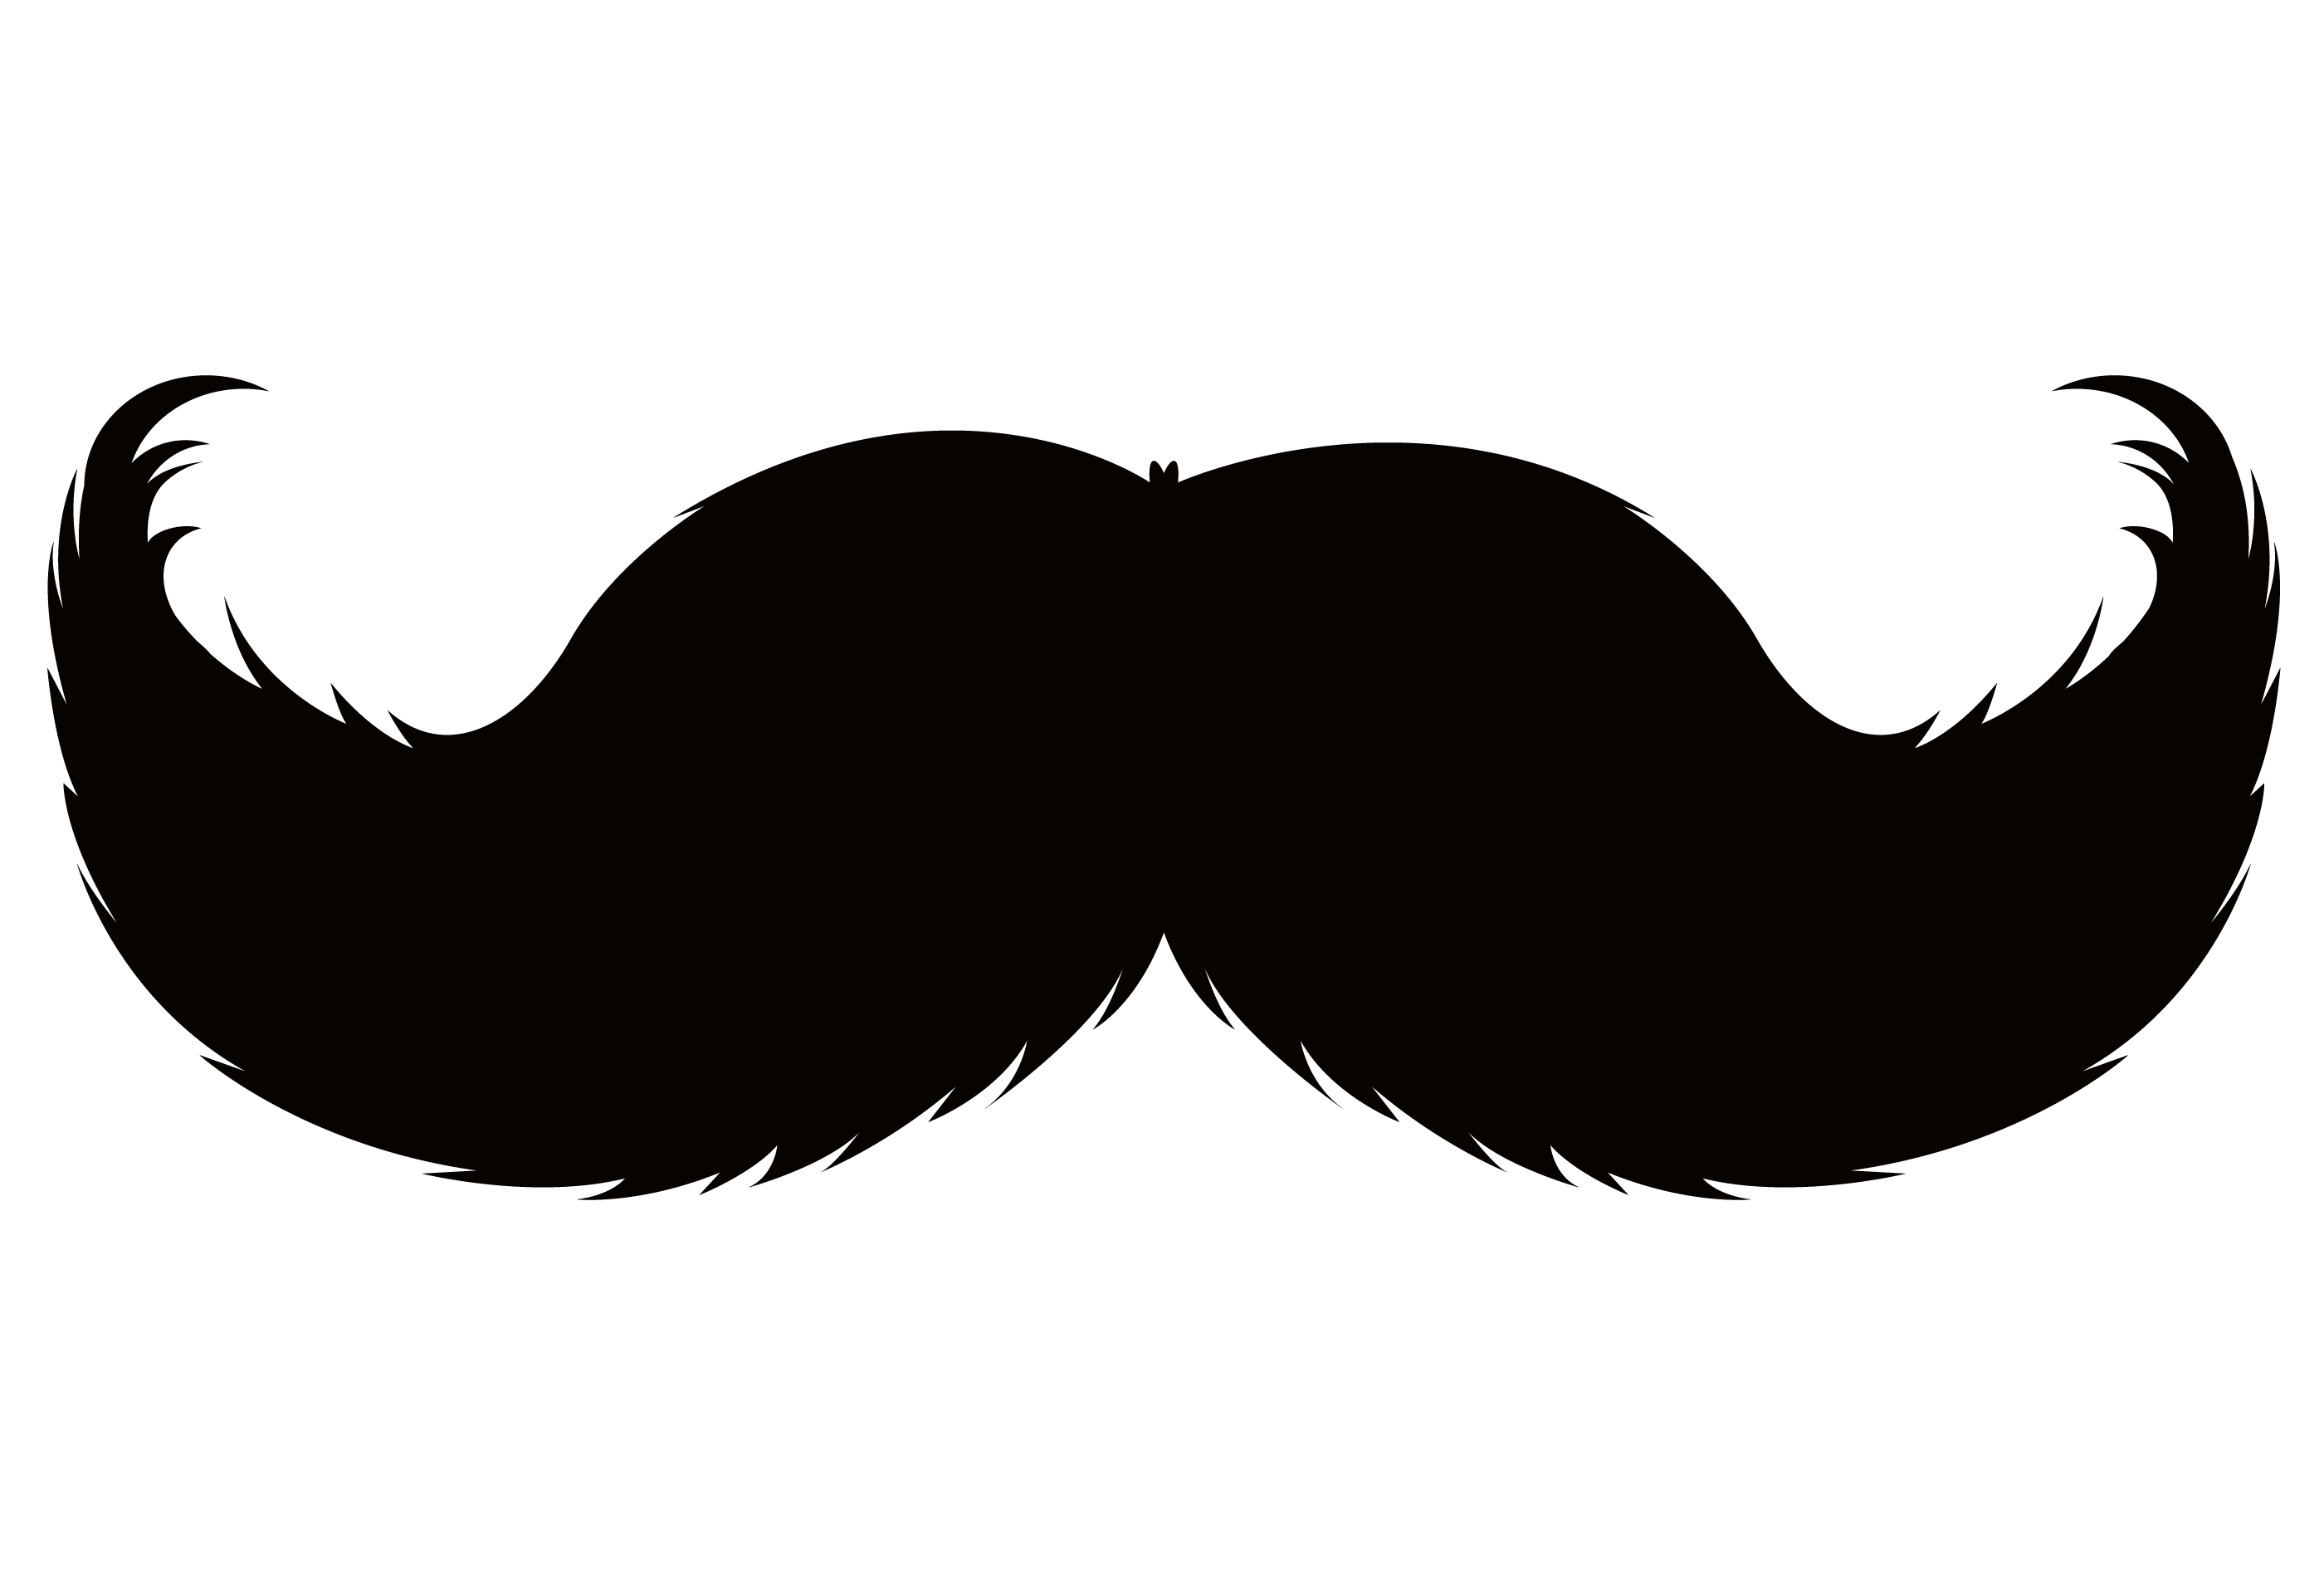 Holt et Paul Smith soutiennent Movember - Tellement SwellTellement 